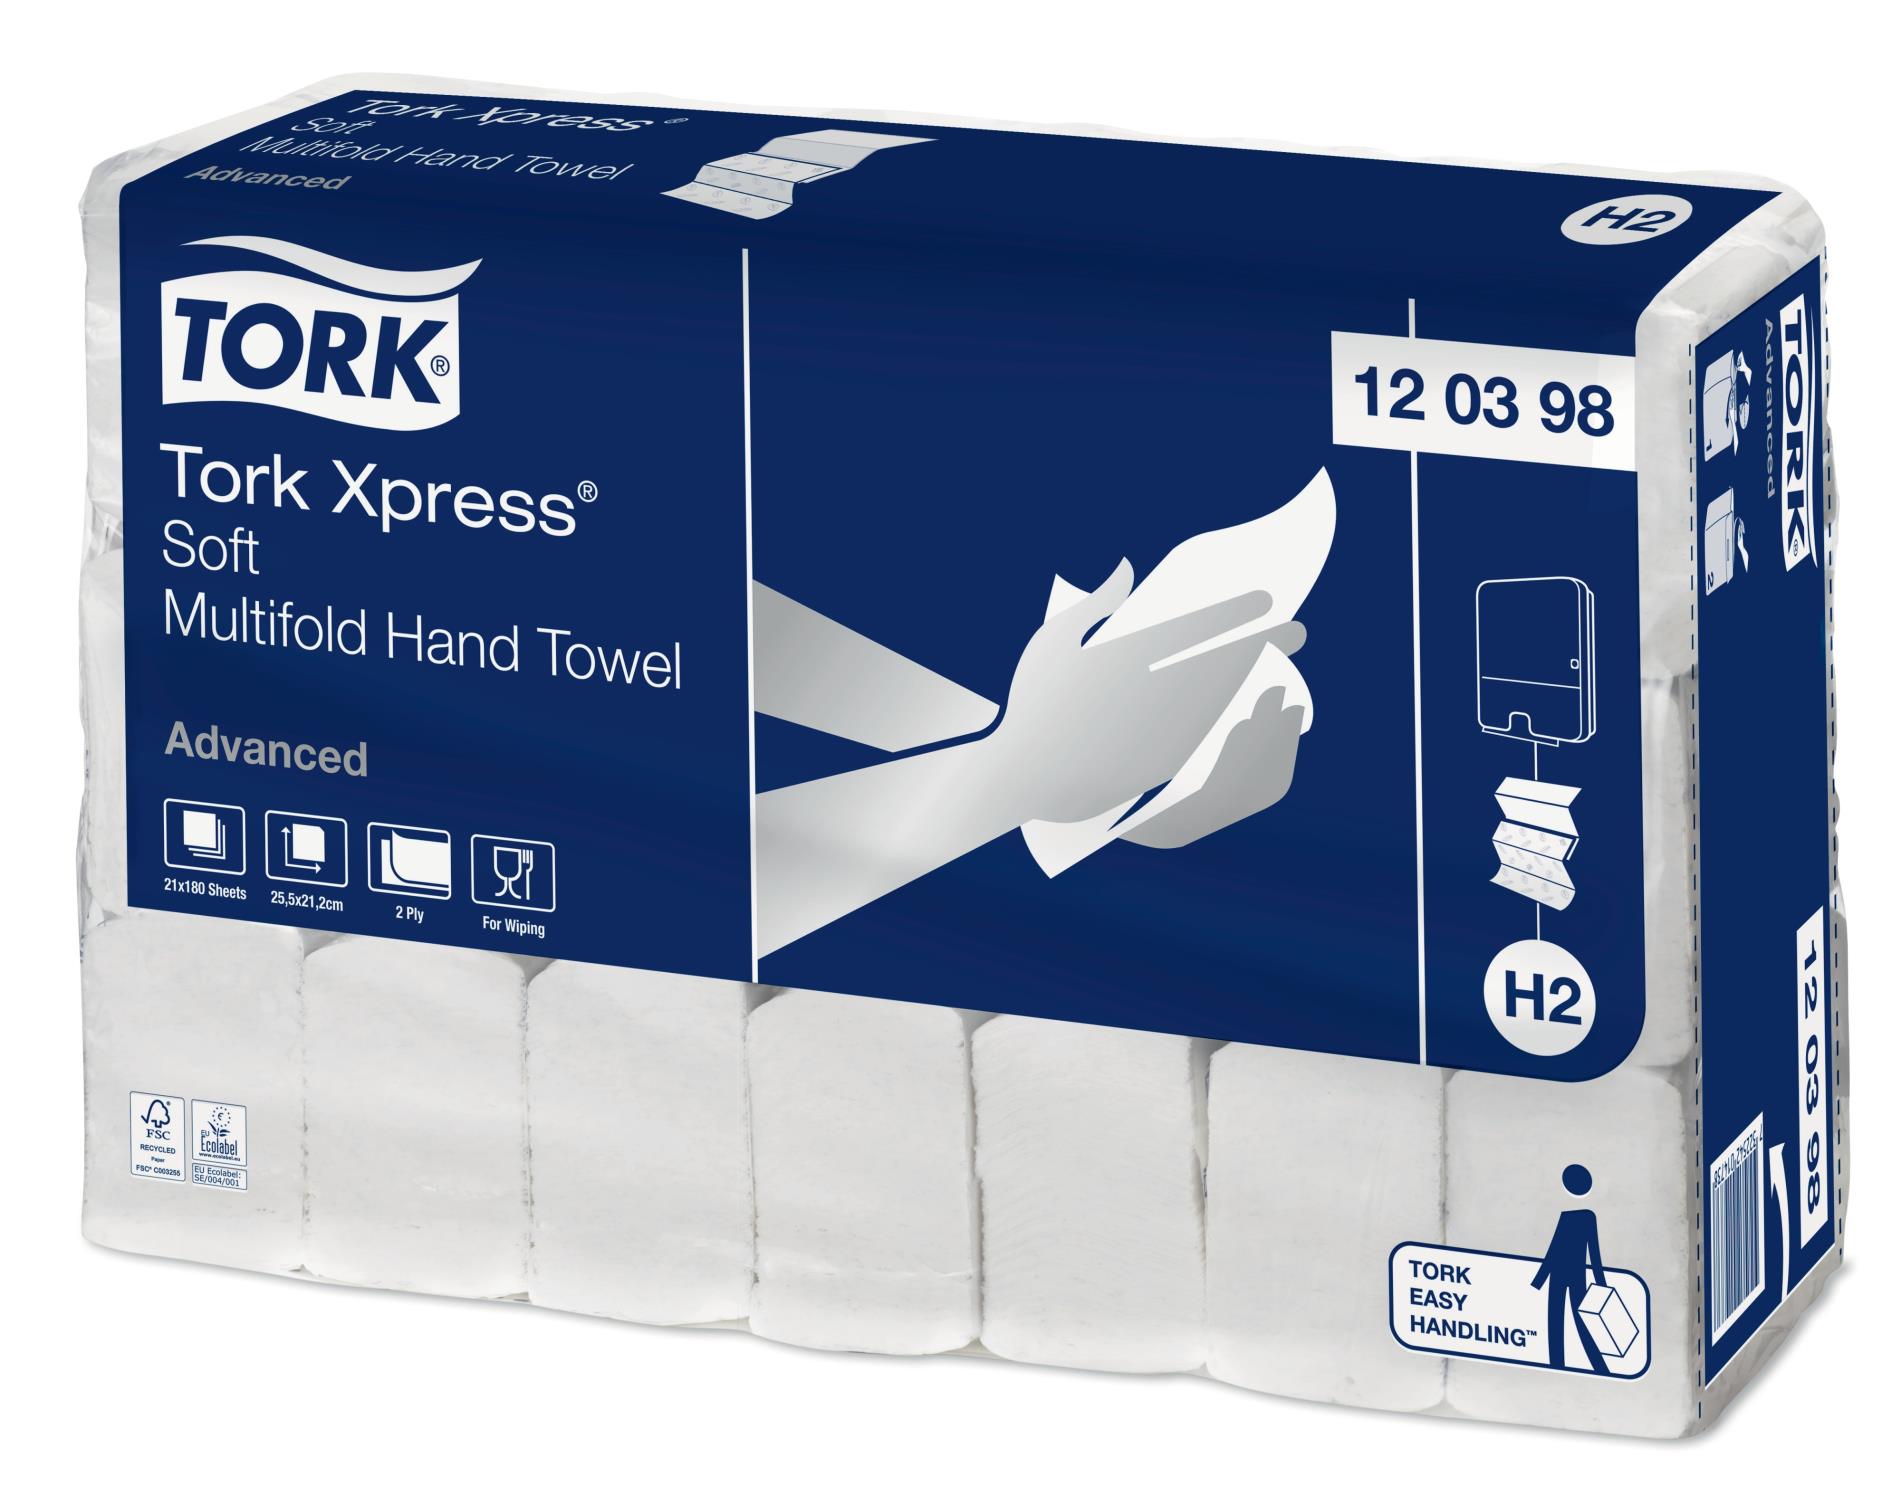 Papírové ručníky Tork Xpress Multiford H2 - 2 vrstvé